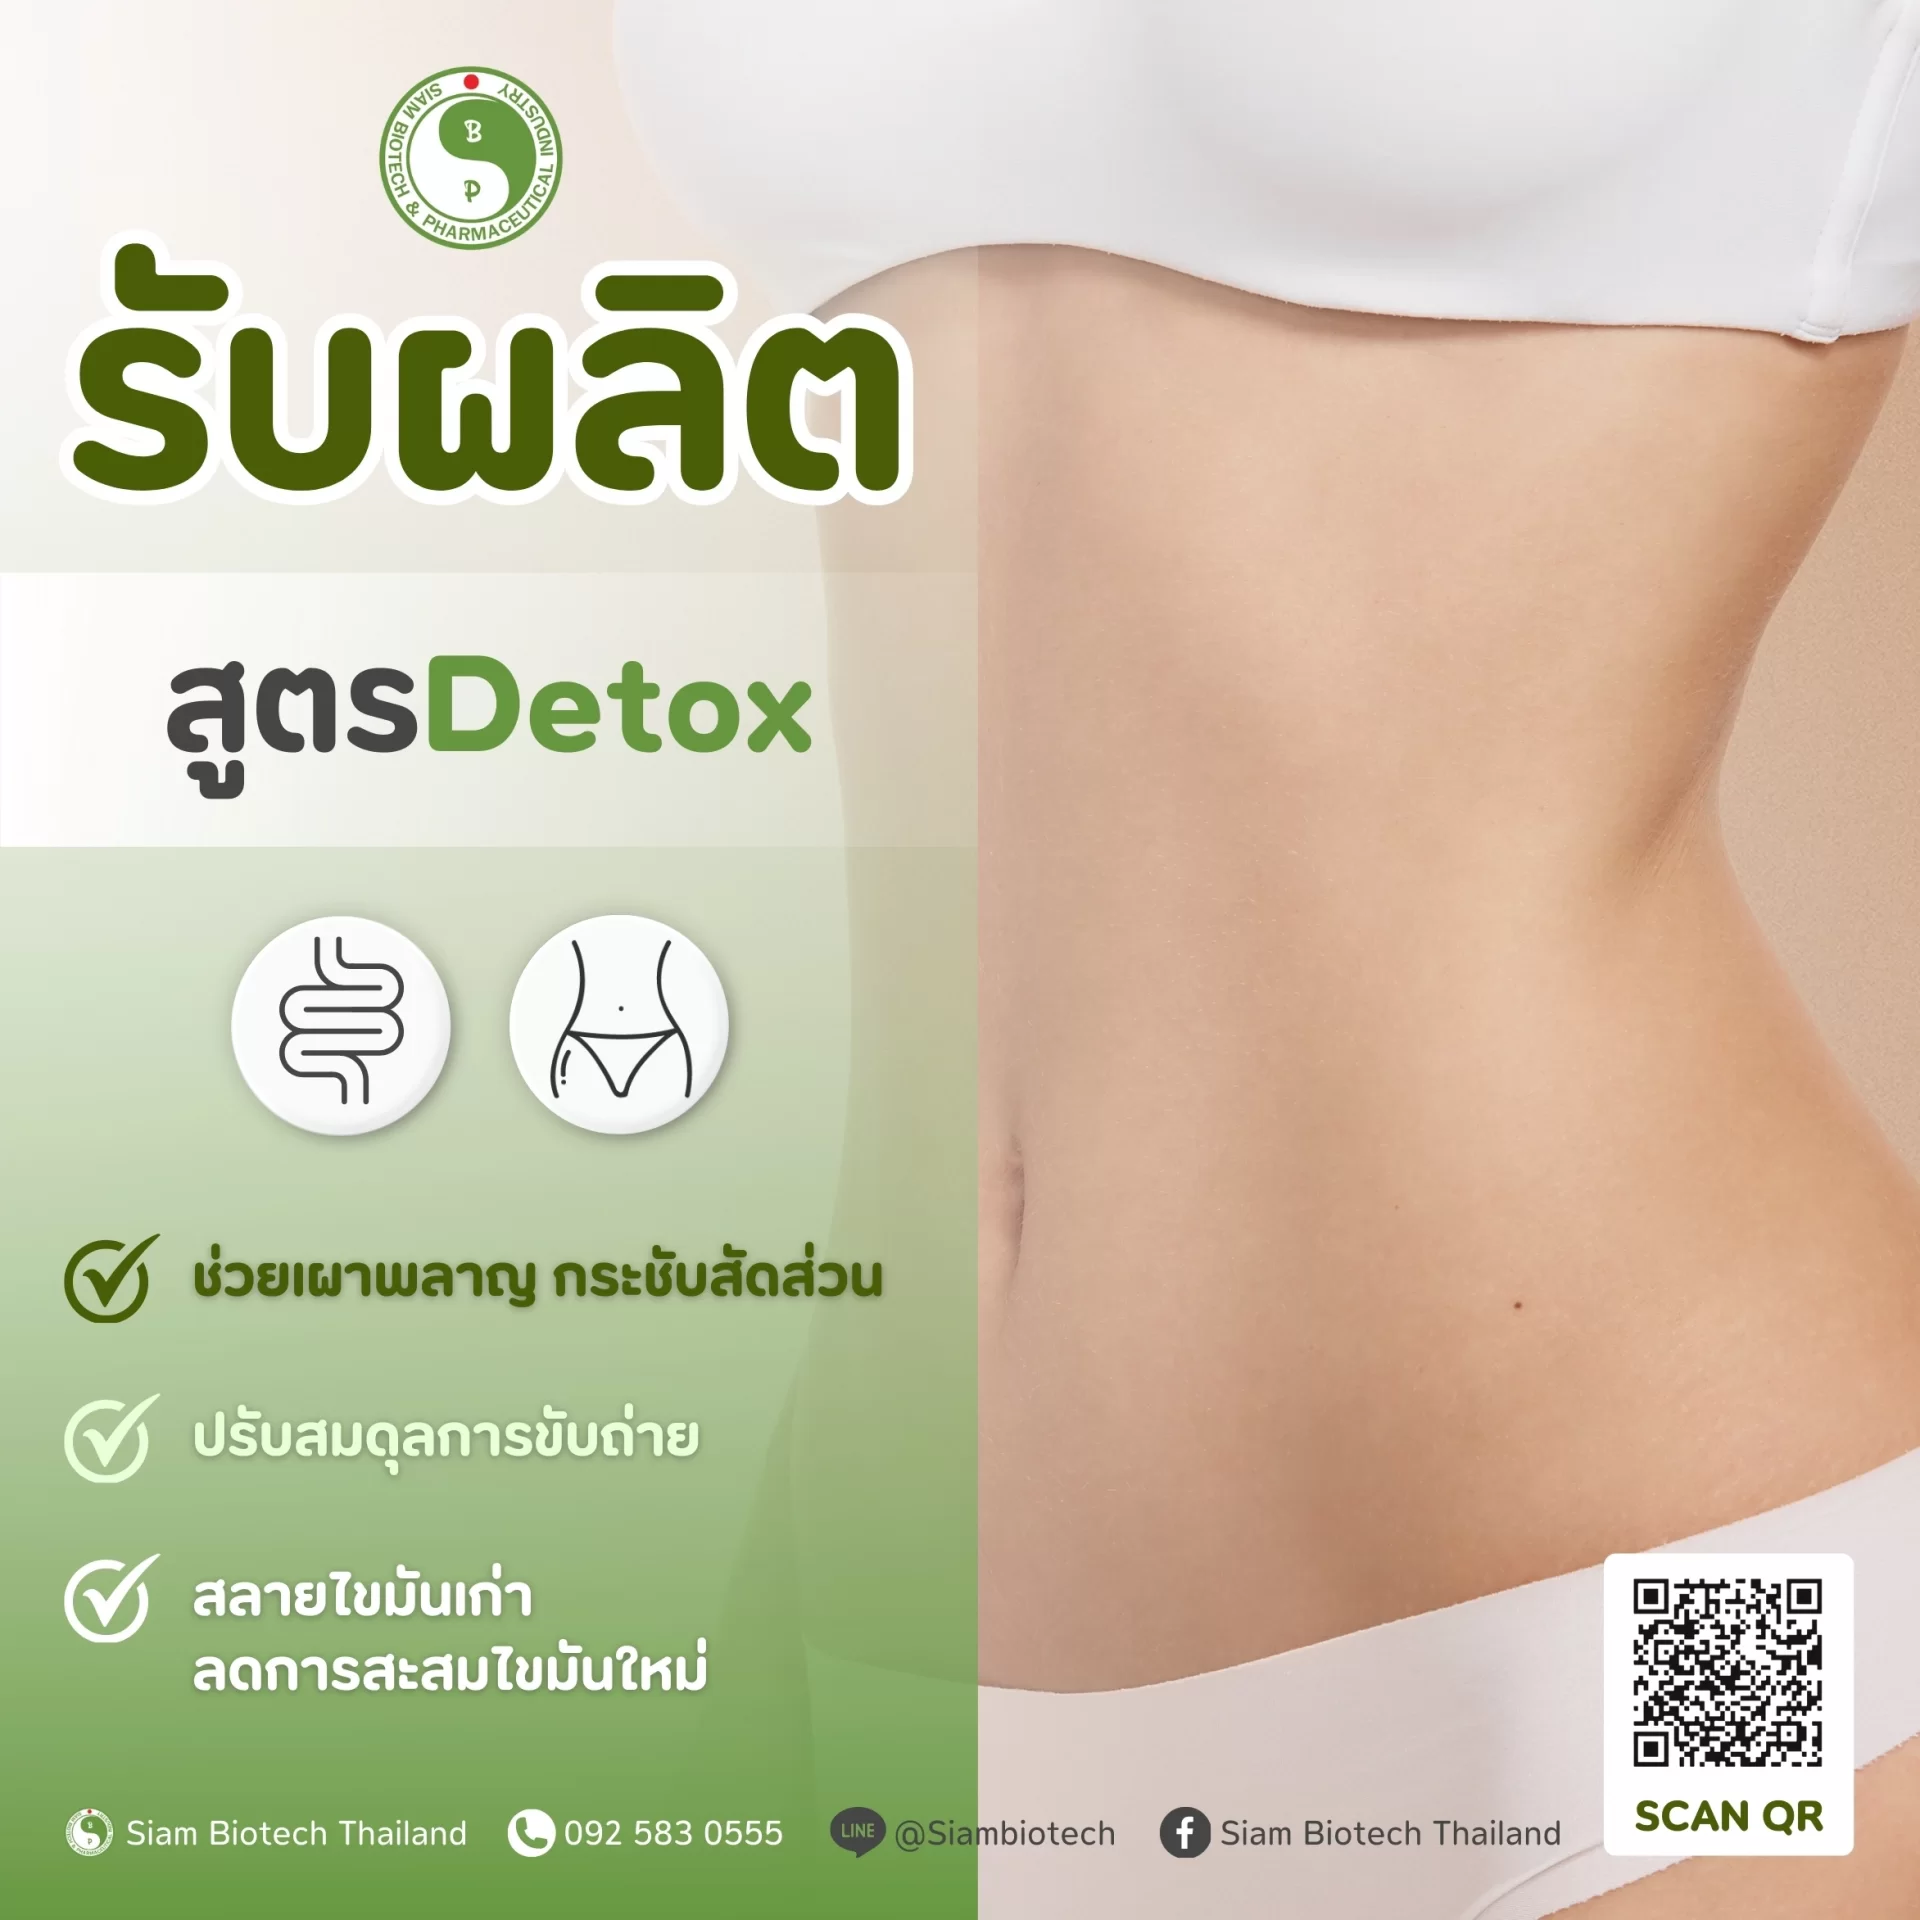 สูตร Detox - SiamBiotech โรงงานรับผลิต OEM ODM อาหารเสริม เสริมอาหาร ยาแผนไทย ยาแผนโบราณ เครื่องดื่ม แบบ One Stop Service